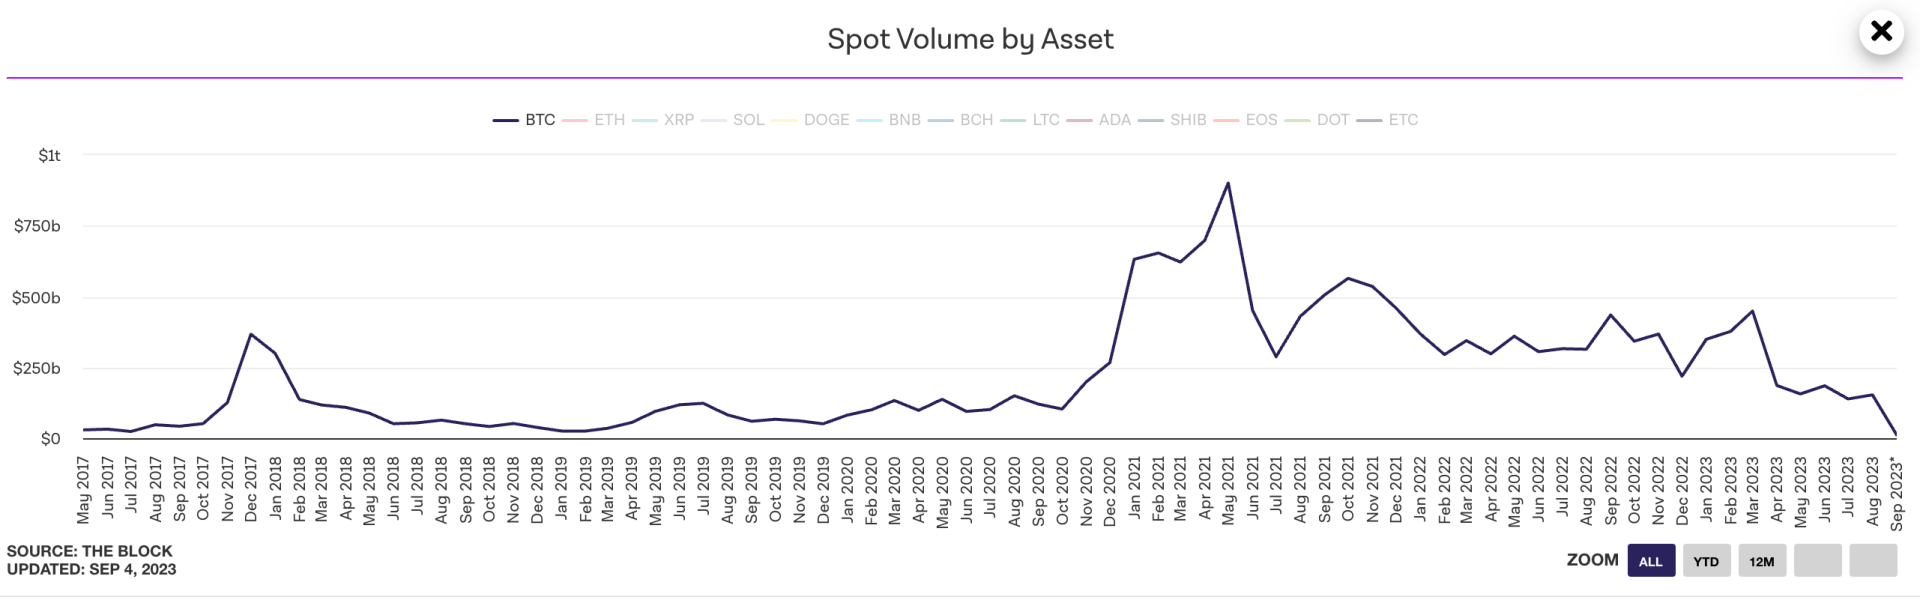 Les volumes spot sur le Bitcoin continue de chuter malgré la potentielle arrivée d'un ETF Bitcoin - 5 septembre 2023. 